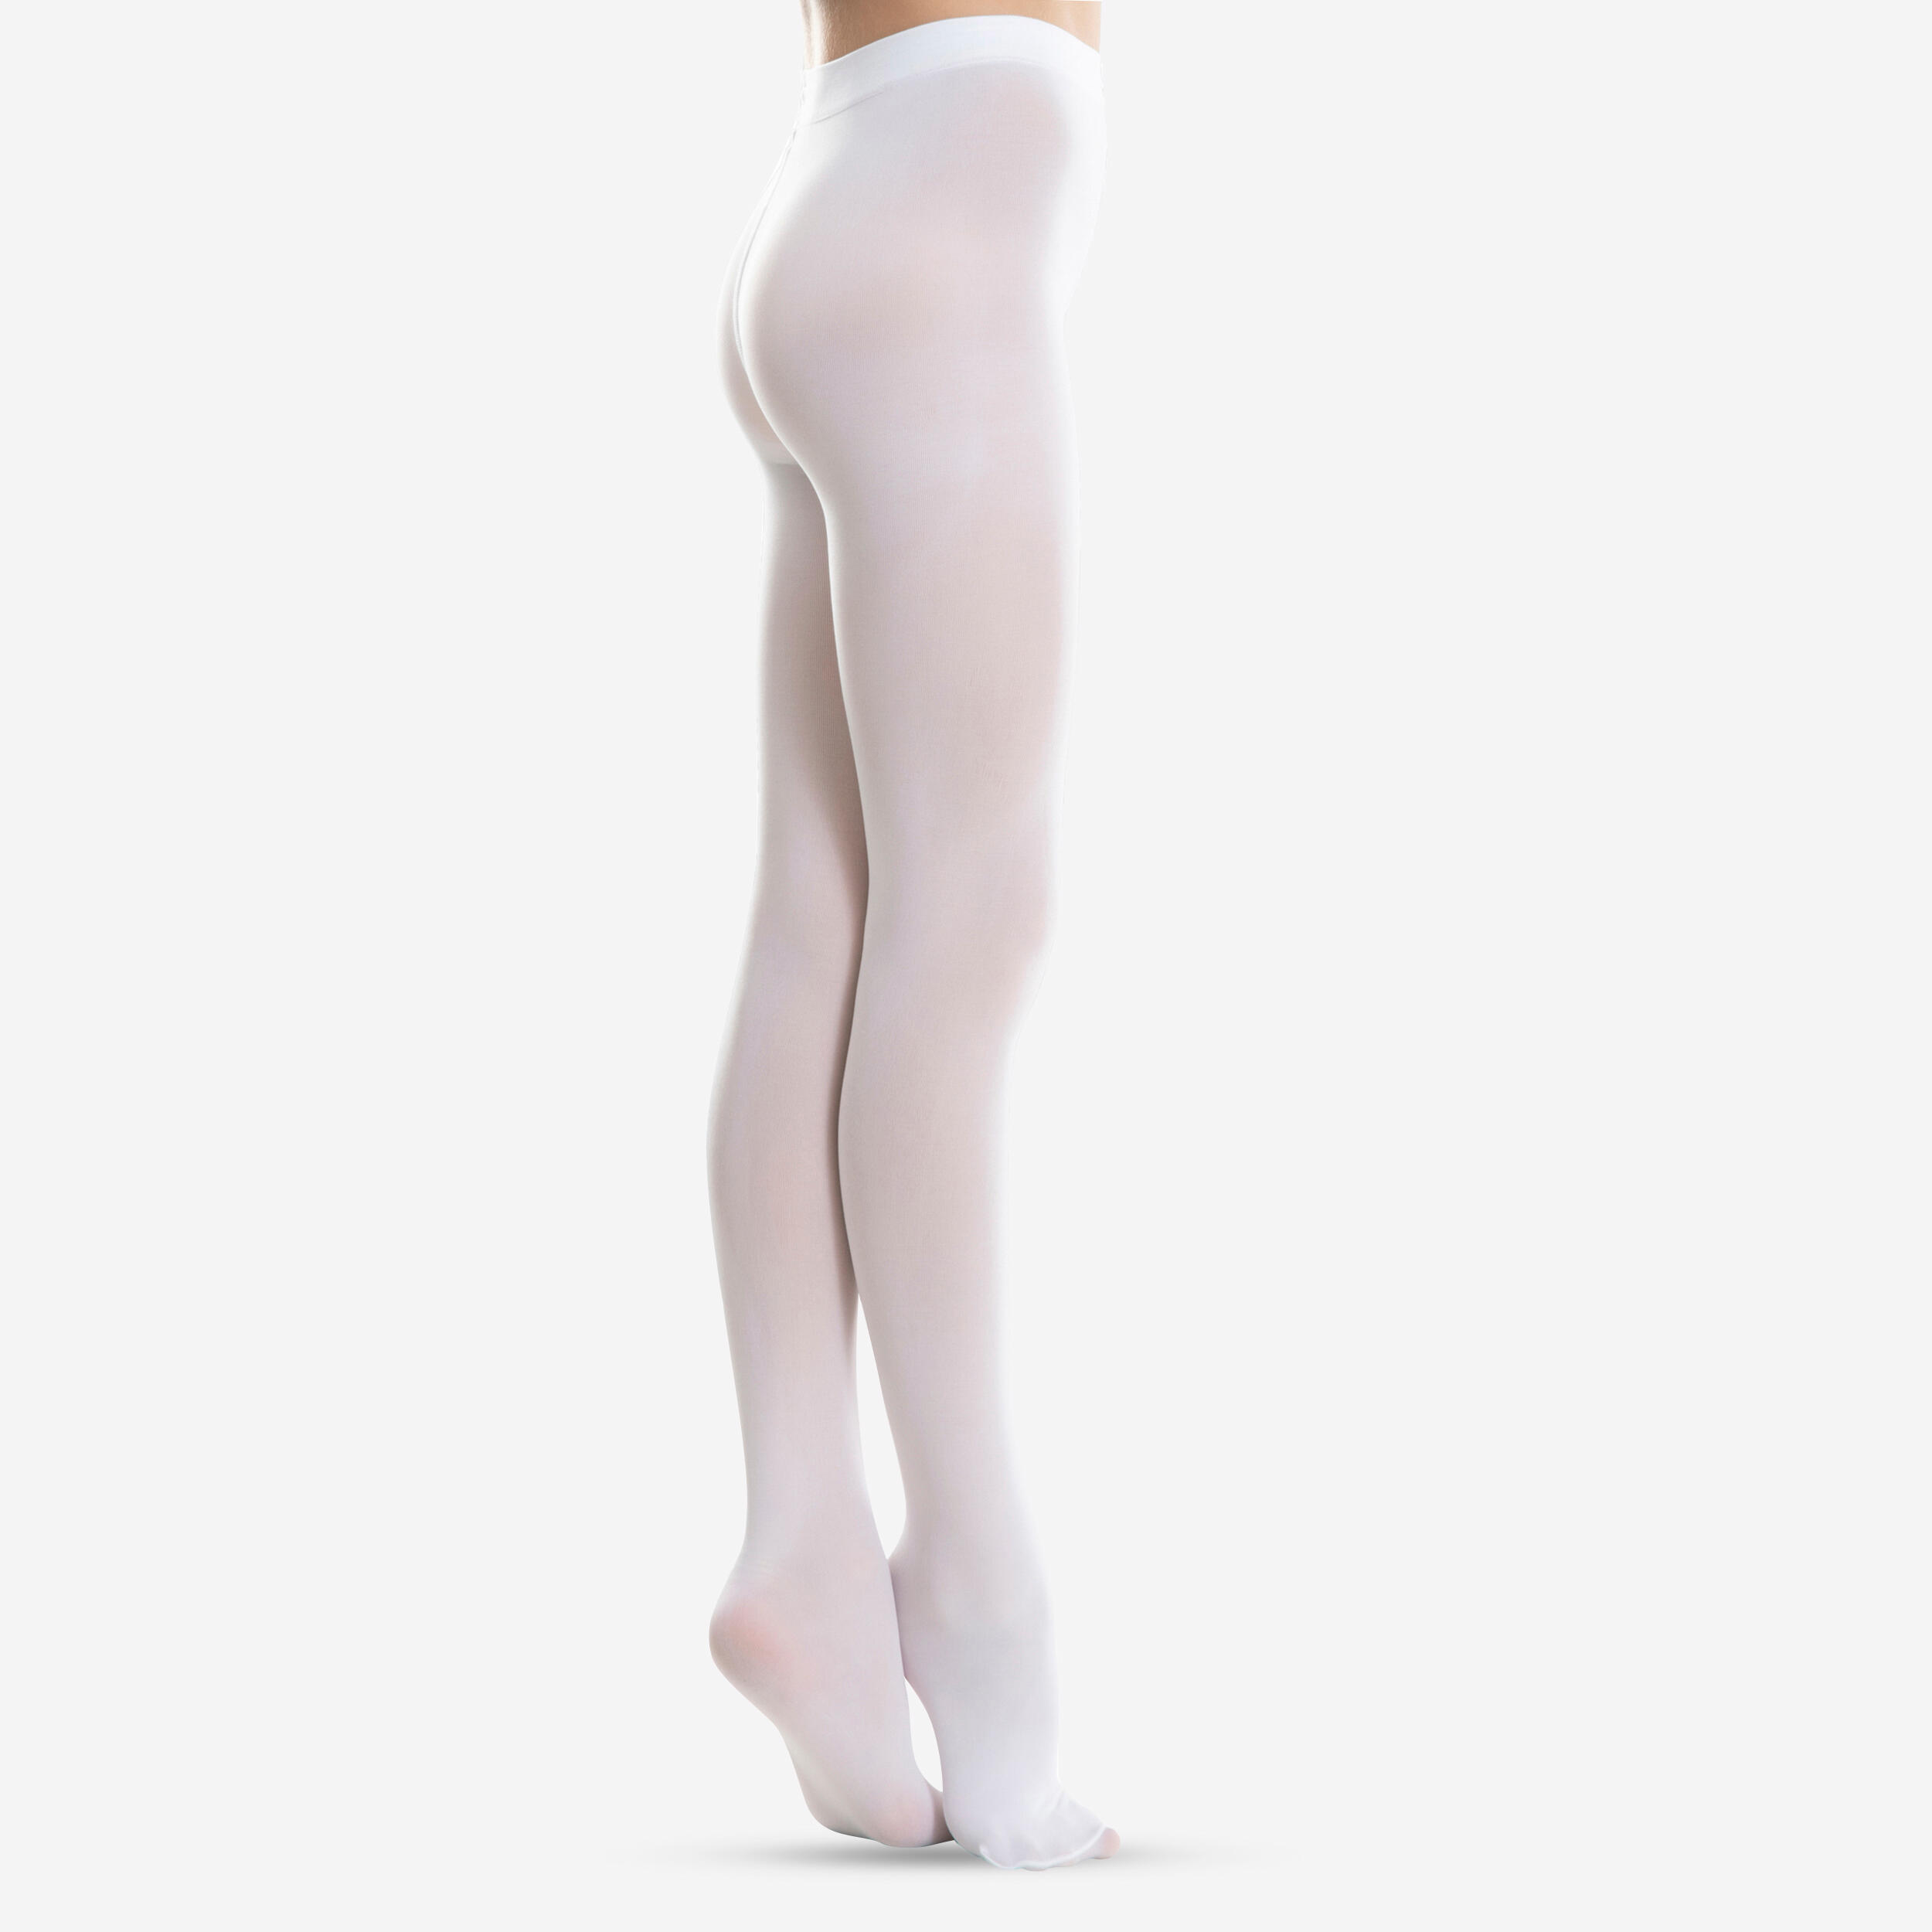 STAREVER Girls' Ballet Tights - White